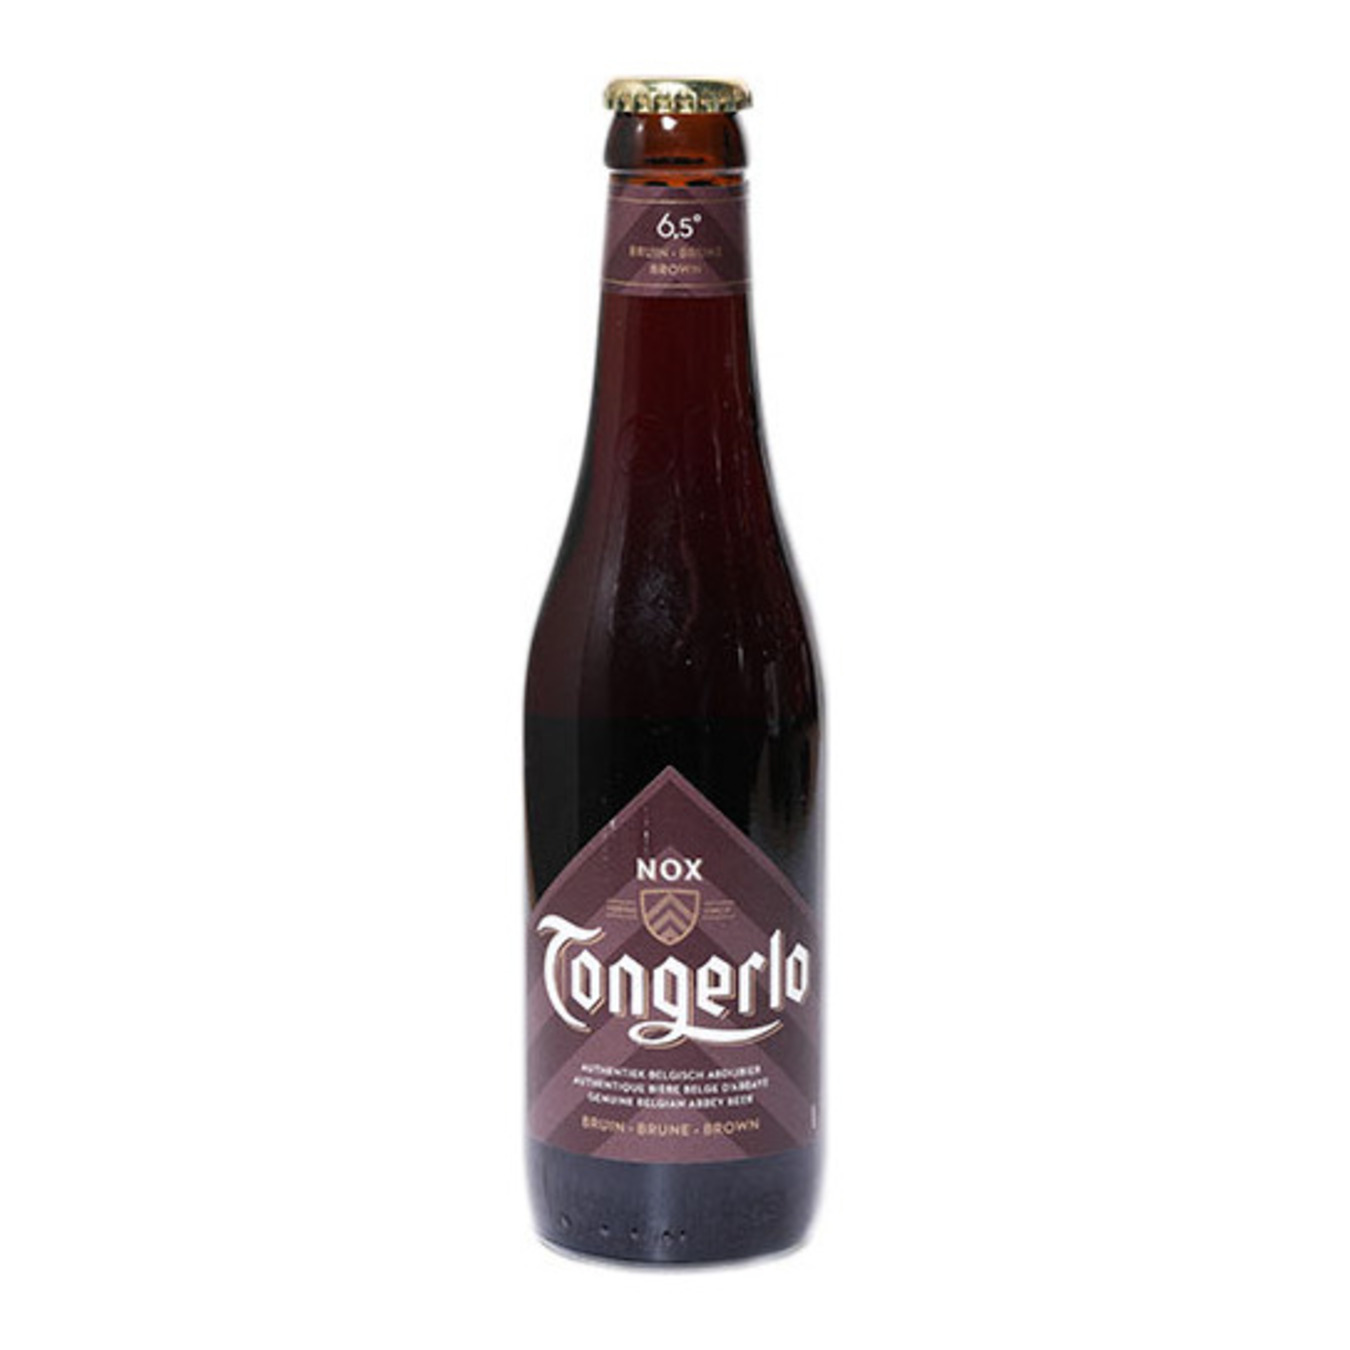 Пиво Tongerlo Nox Brown темное 6,5% 0,33л